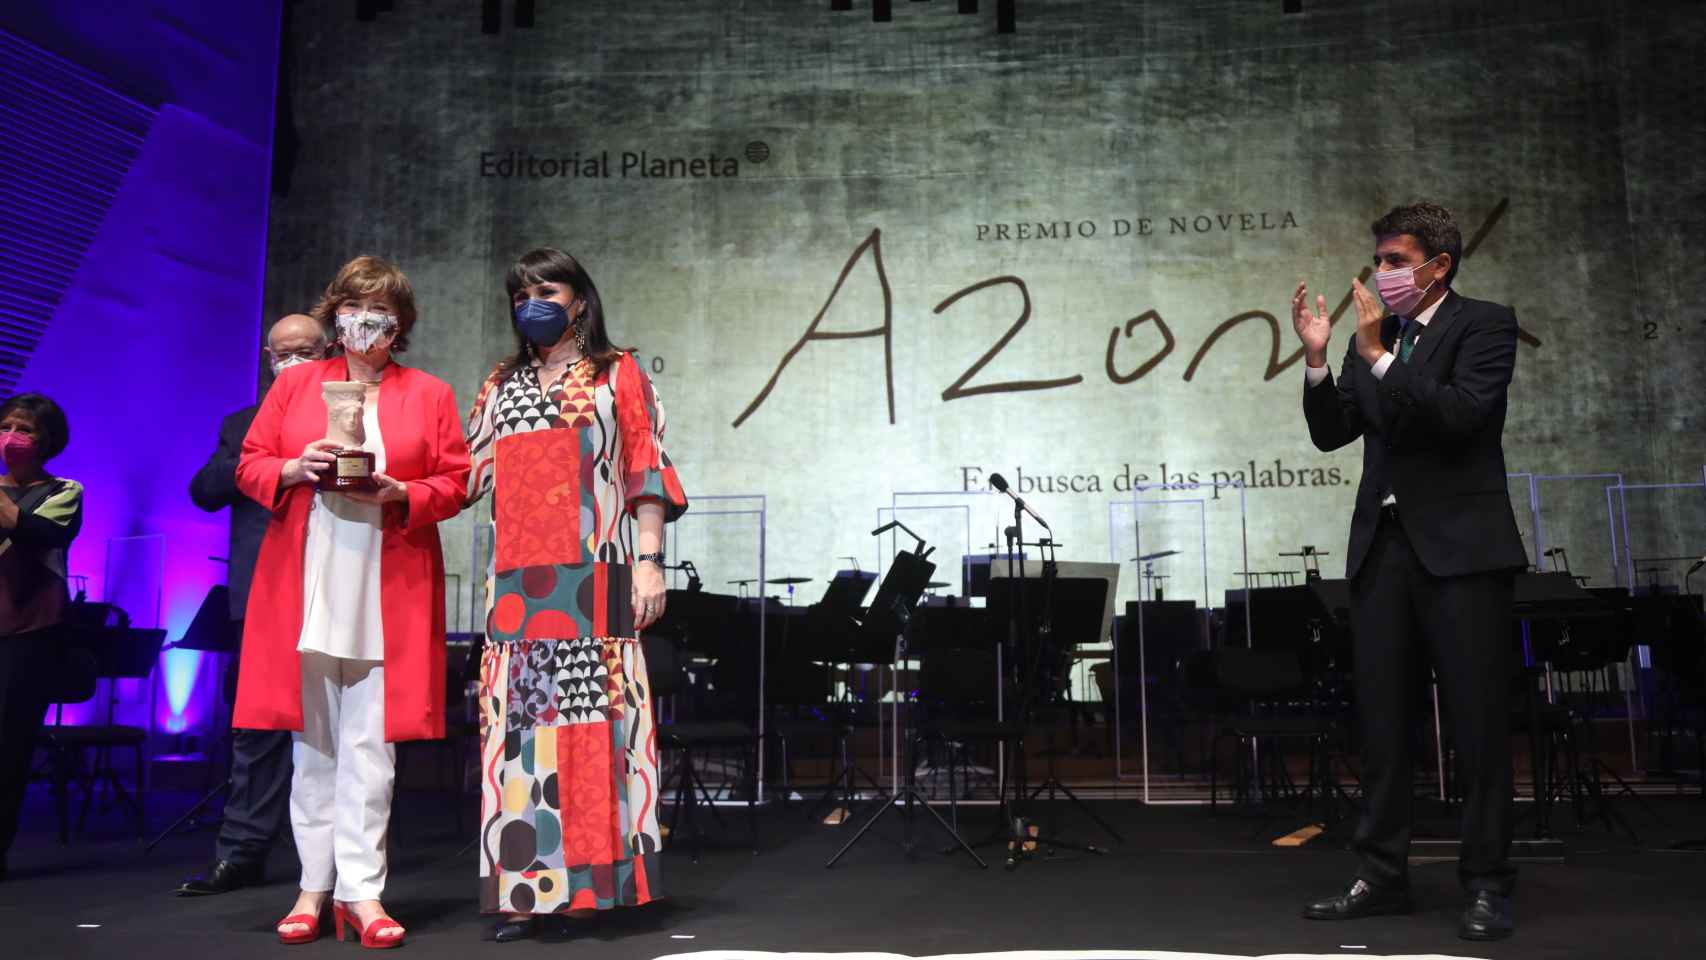 Nativel Preciado recibe el premio Azorín 2021 por su novela 'El santuario de los elefantes', con Parra y Mazón.